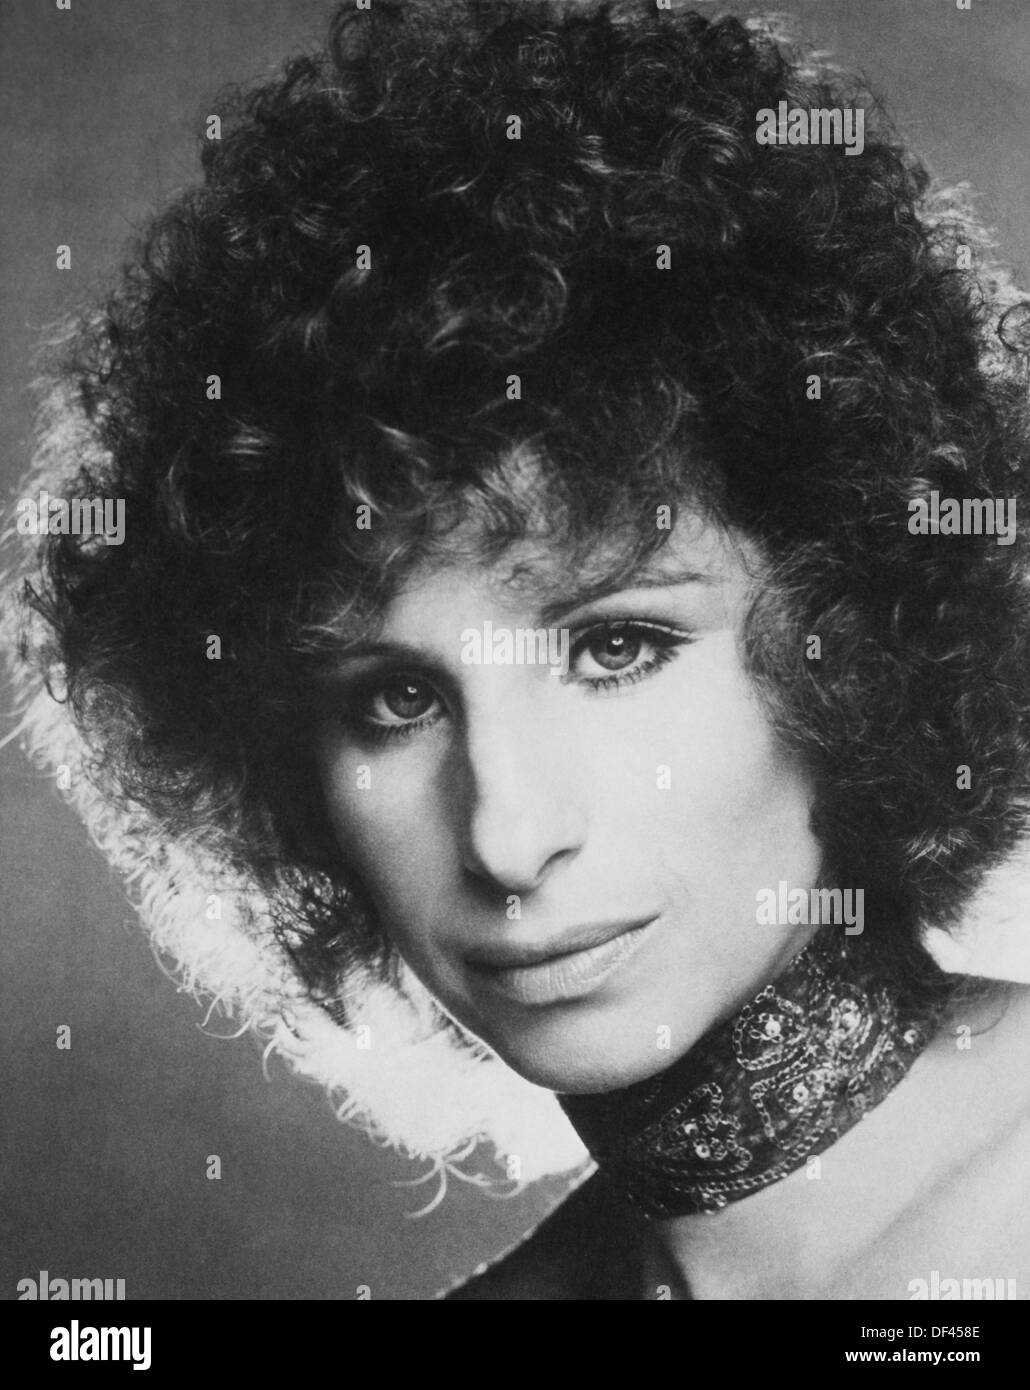 Barbra Streisand, Werbung Portrait für den Film", ein Star wird geboren", die ersten Künstler mit Vertrieb über Warner Bros., 1976 Stockfoto